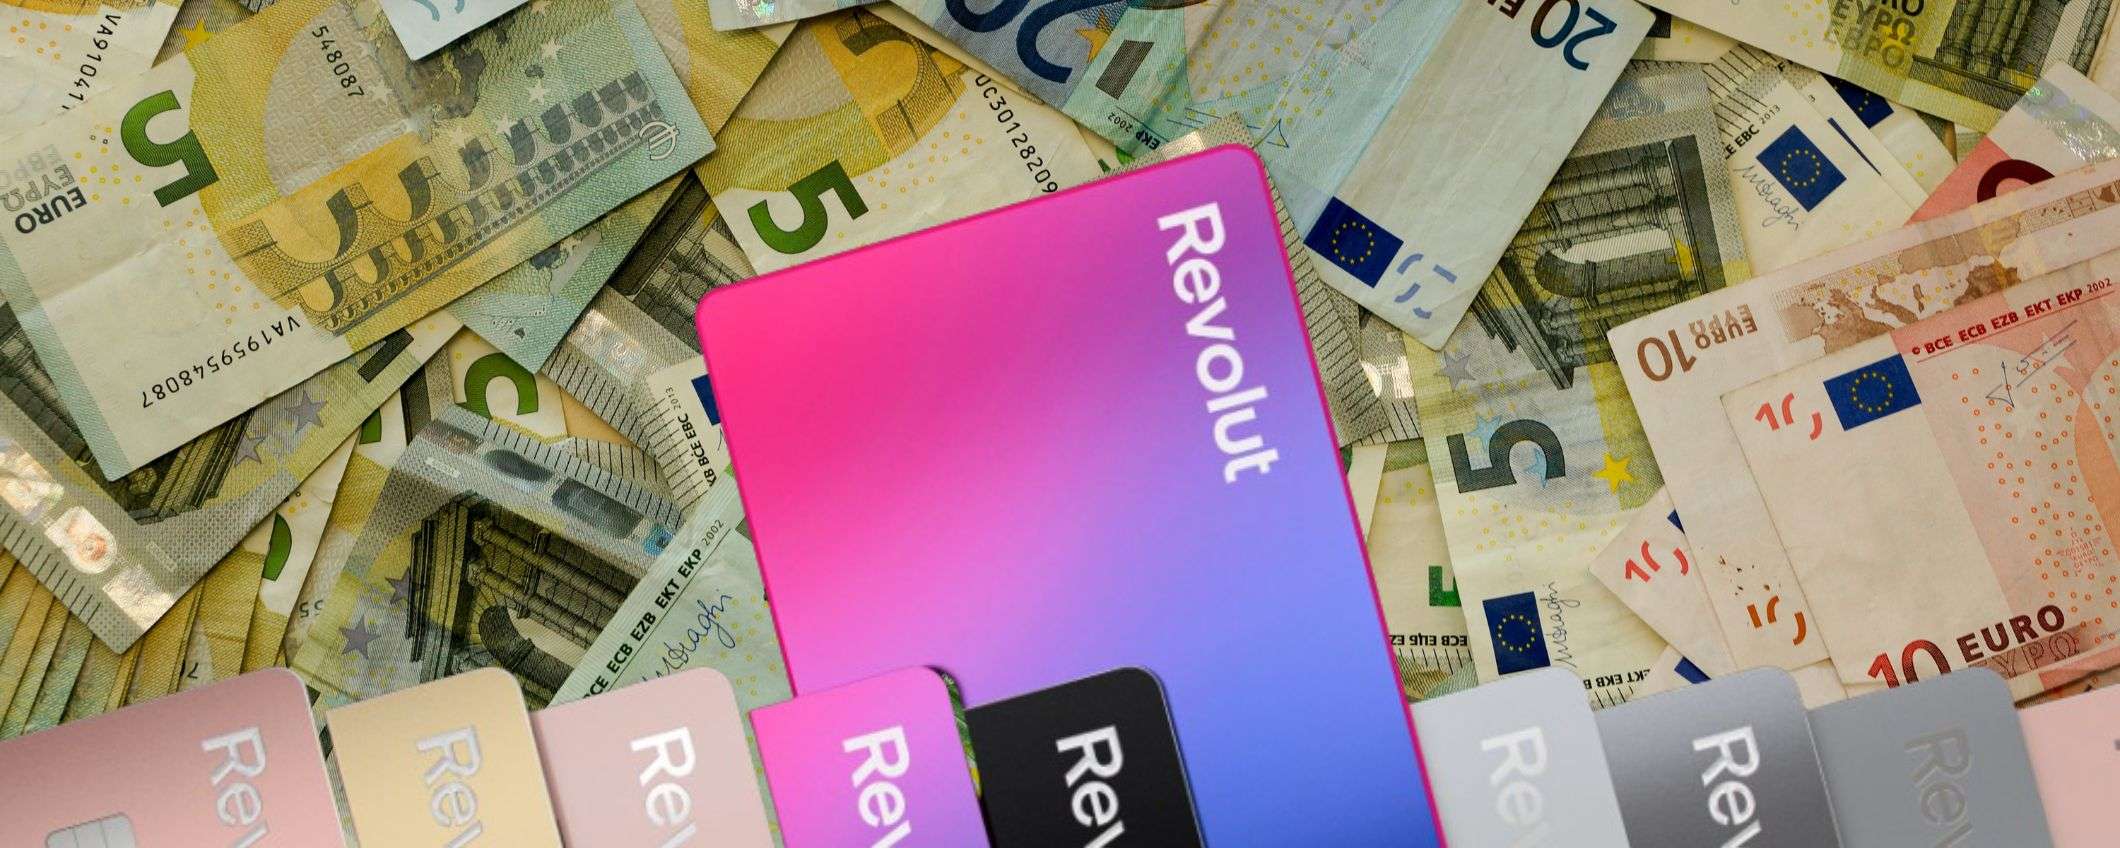 Revolut, la carta per risparmiare e investire per te a soli 9€